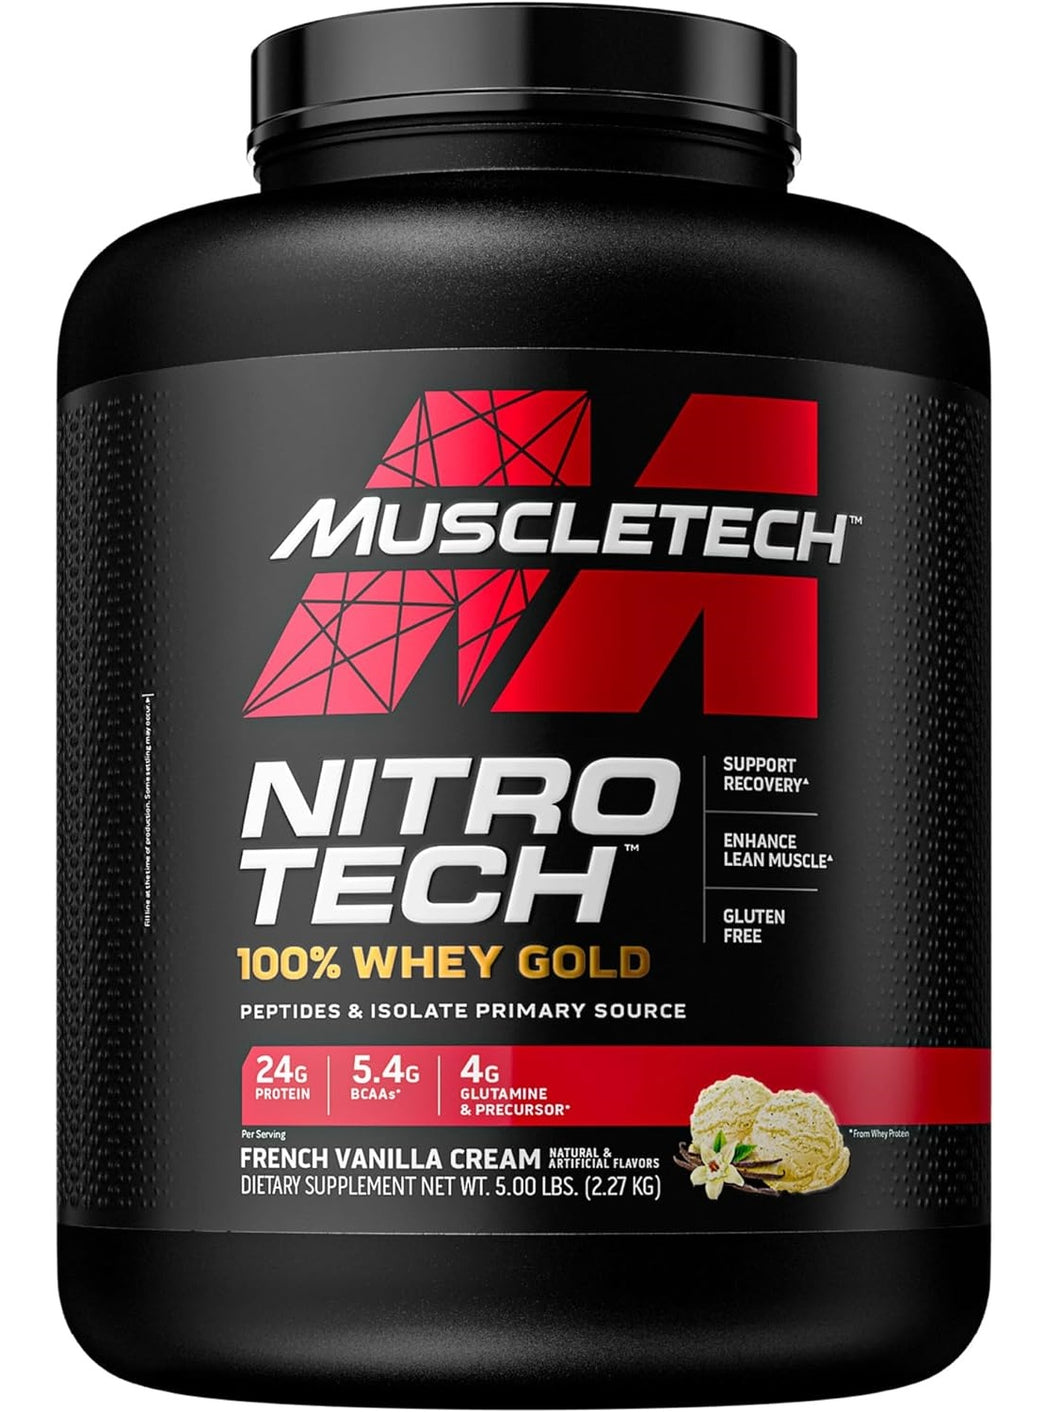 Proteína Muscletech, NitroTech 100% Whey Gold, 24 gramos de proteína, 5.4 gramos BCAA, 4 gramos Glutamina, 5 Libras